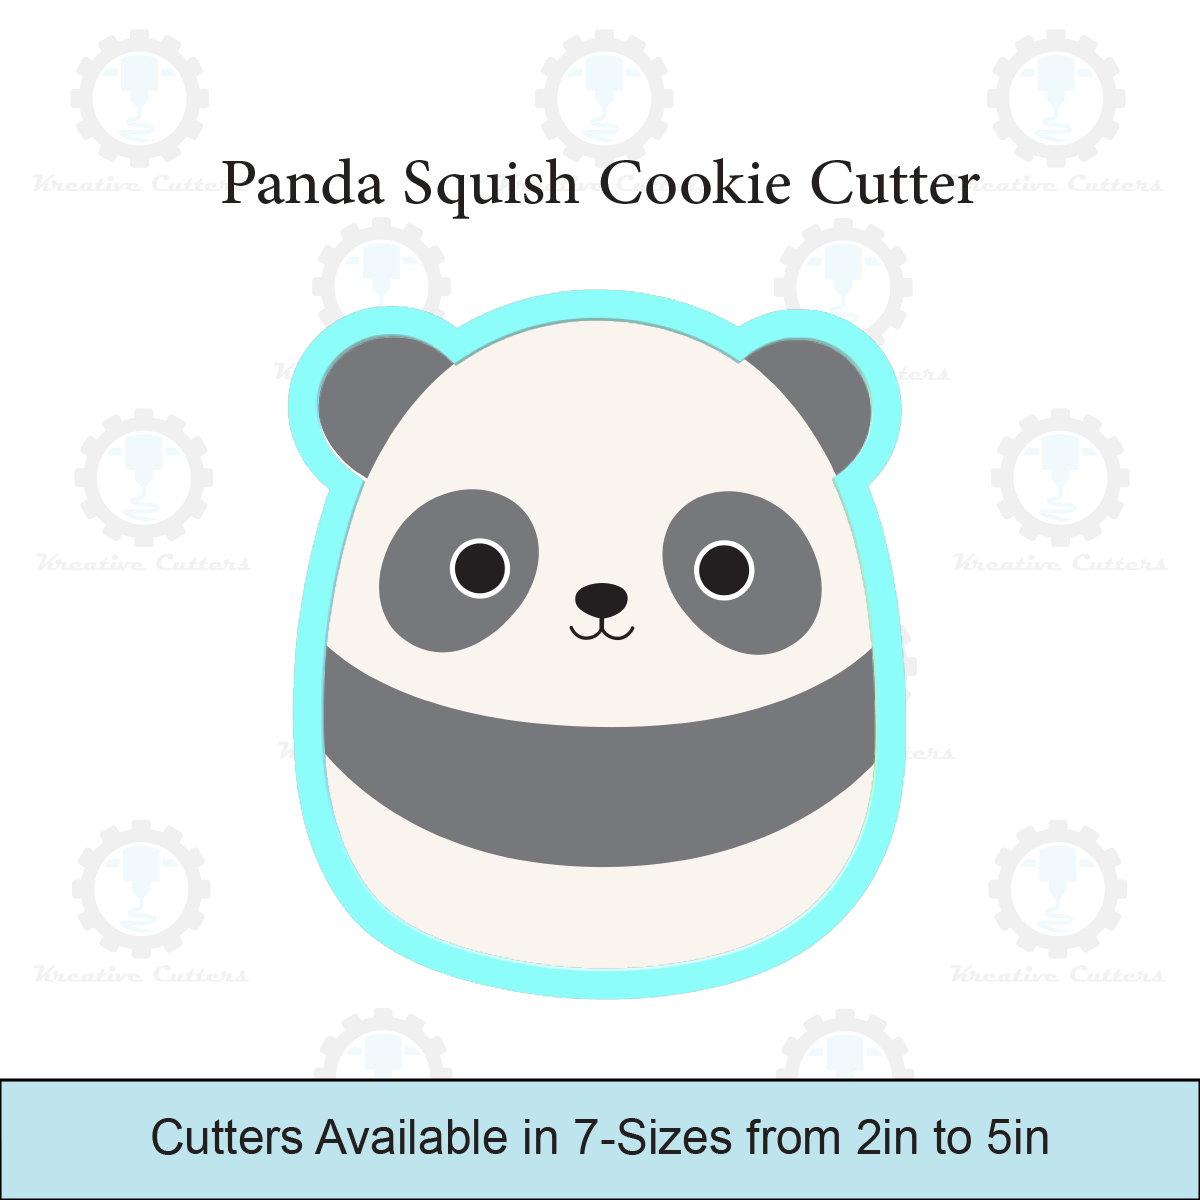 Panda Squish Cookie Cutters